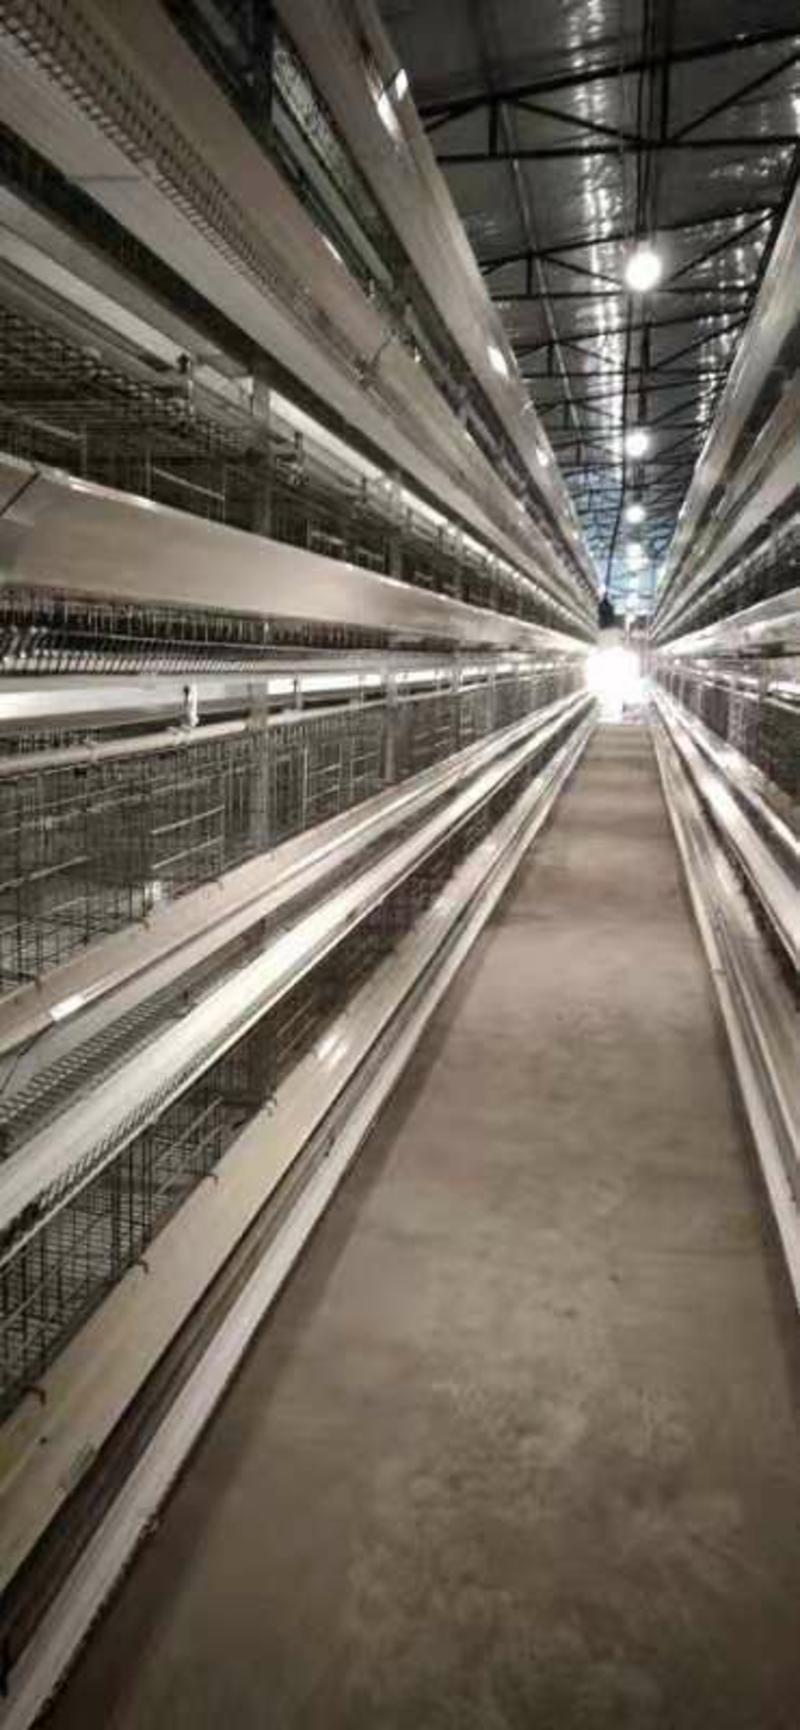 层叠式蛋鸡笼全自动化设备两人可管理五万只鸡